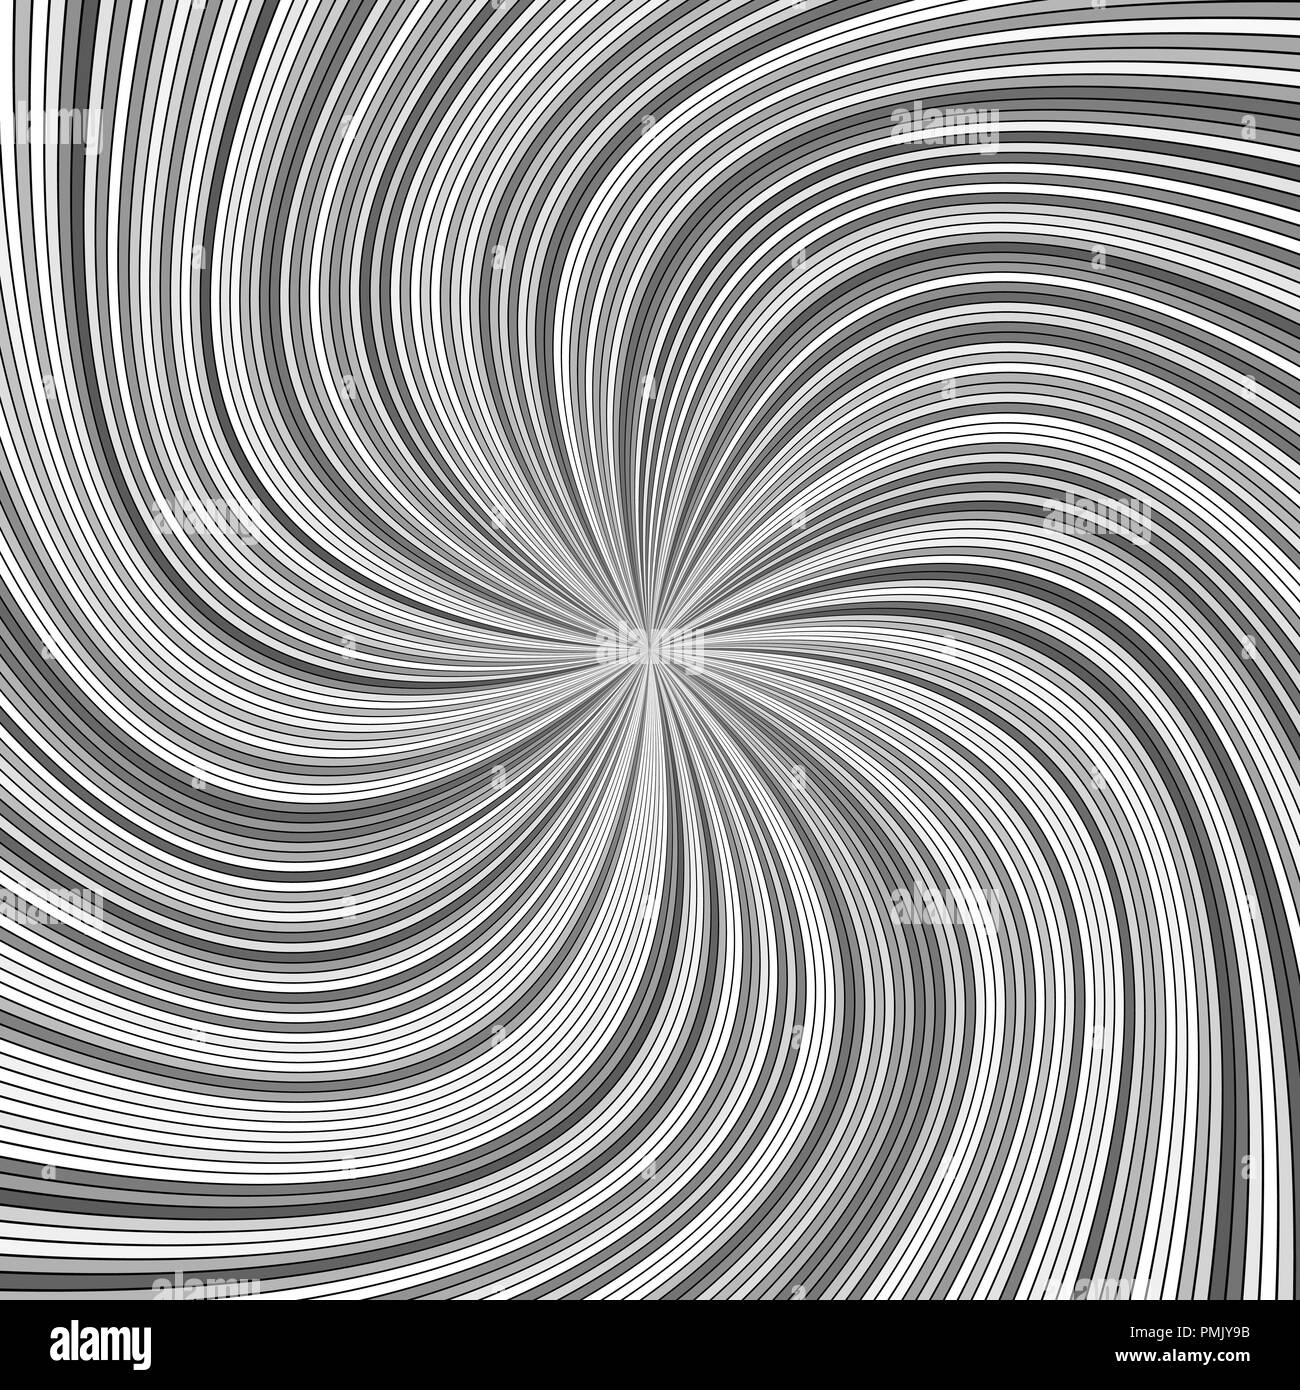 Grau hypnotisch abstrakte Swirl stripe Hintergrund - Vektor gekrümmte ray Burst Grafik Stock Vektor